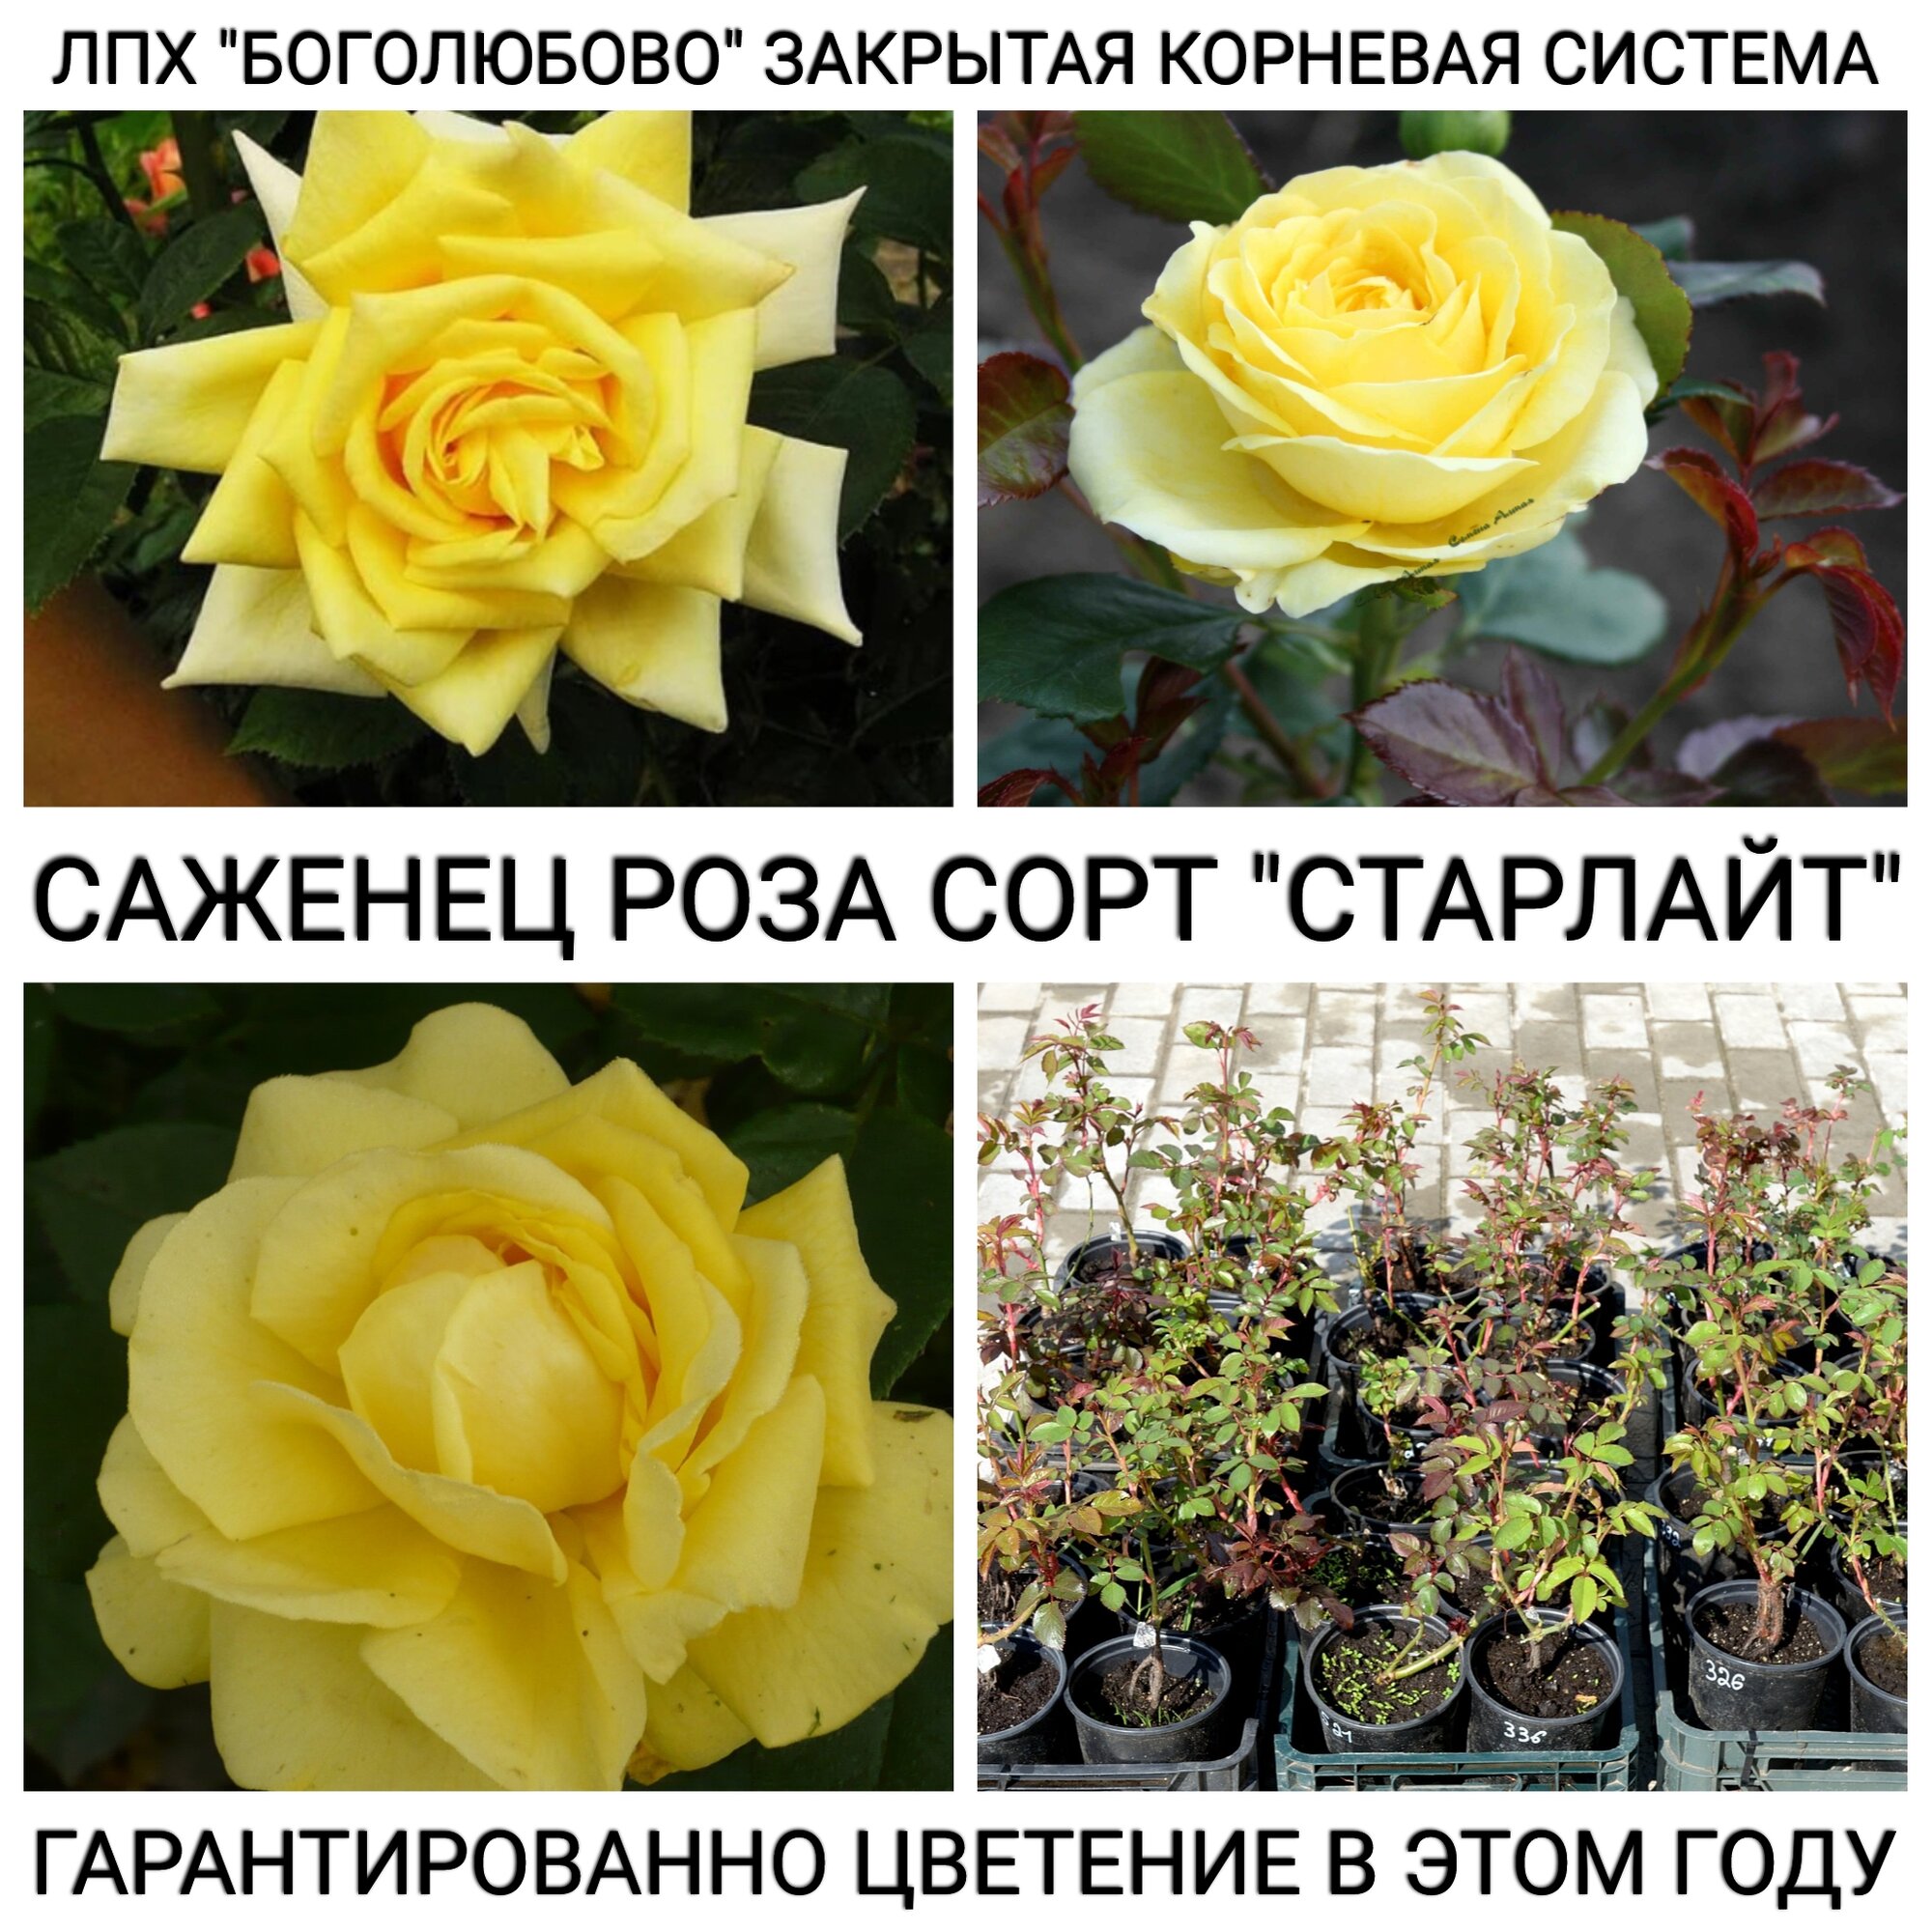 Саженец розы сорт "Старлайт" Закрытая корневая система